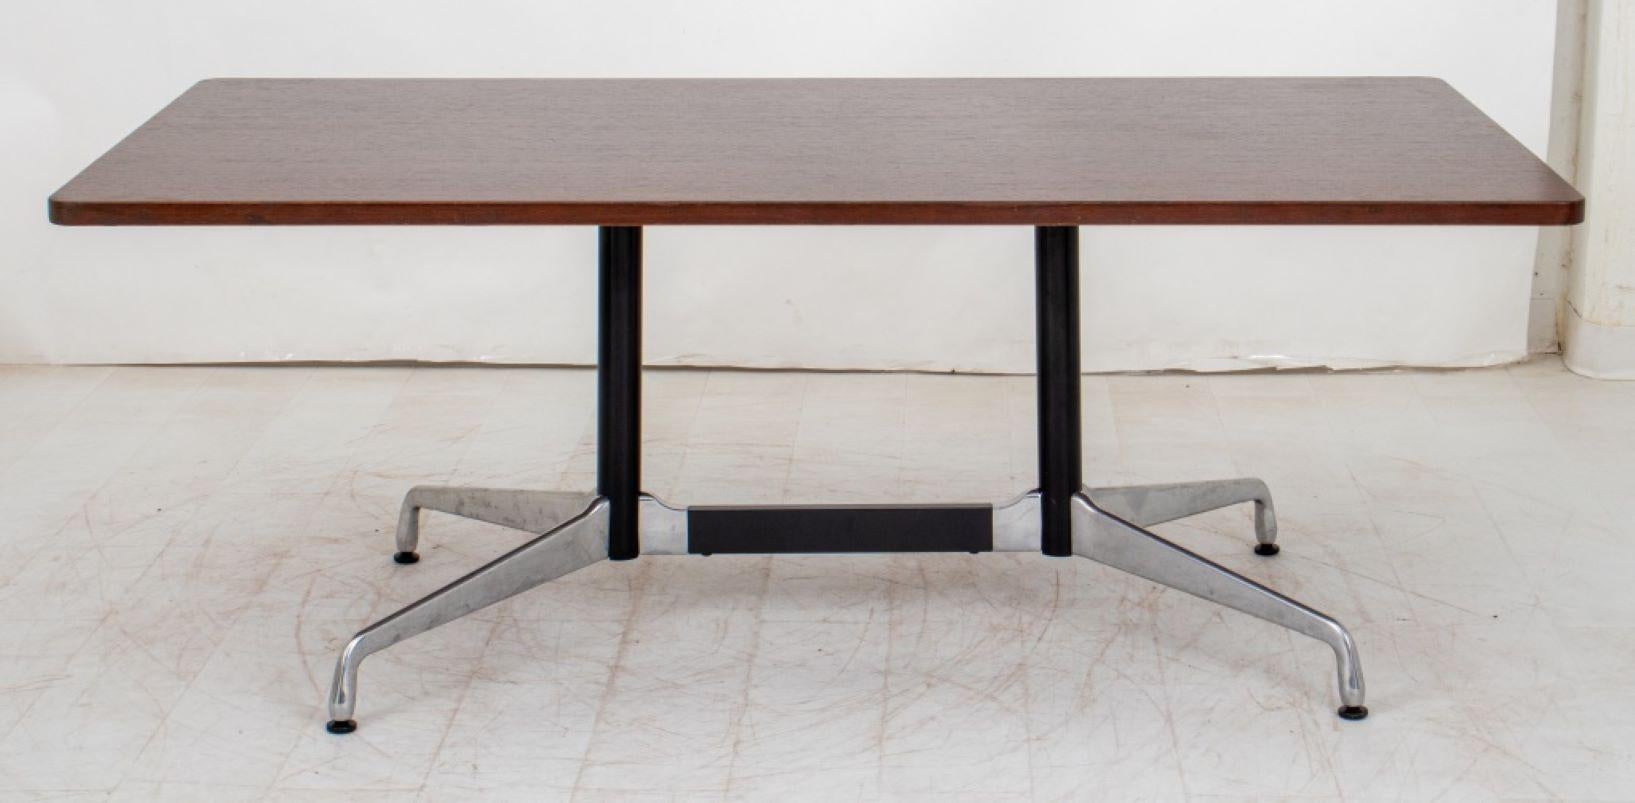 Charles und Ray Eames für Herman Miller Mid-Century Modern Rectangular Walnut Top Dining or Conference Table, auf Aluminiumsockel mit vier Füßen, Eames Label auf der Unterseite der Tischplatte. 27,75